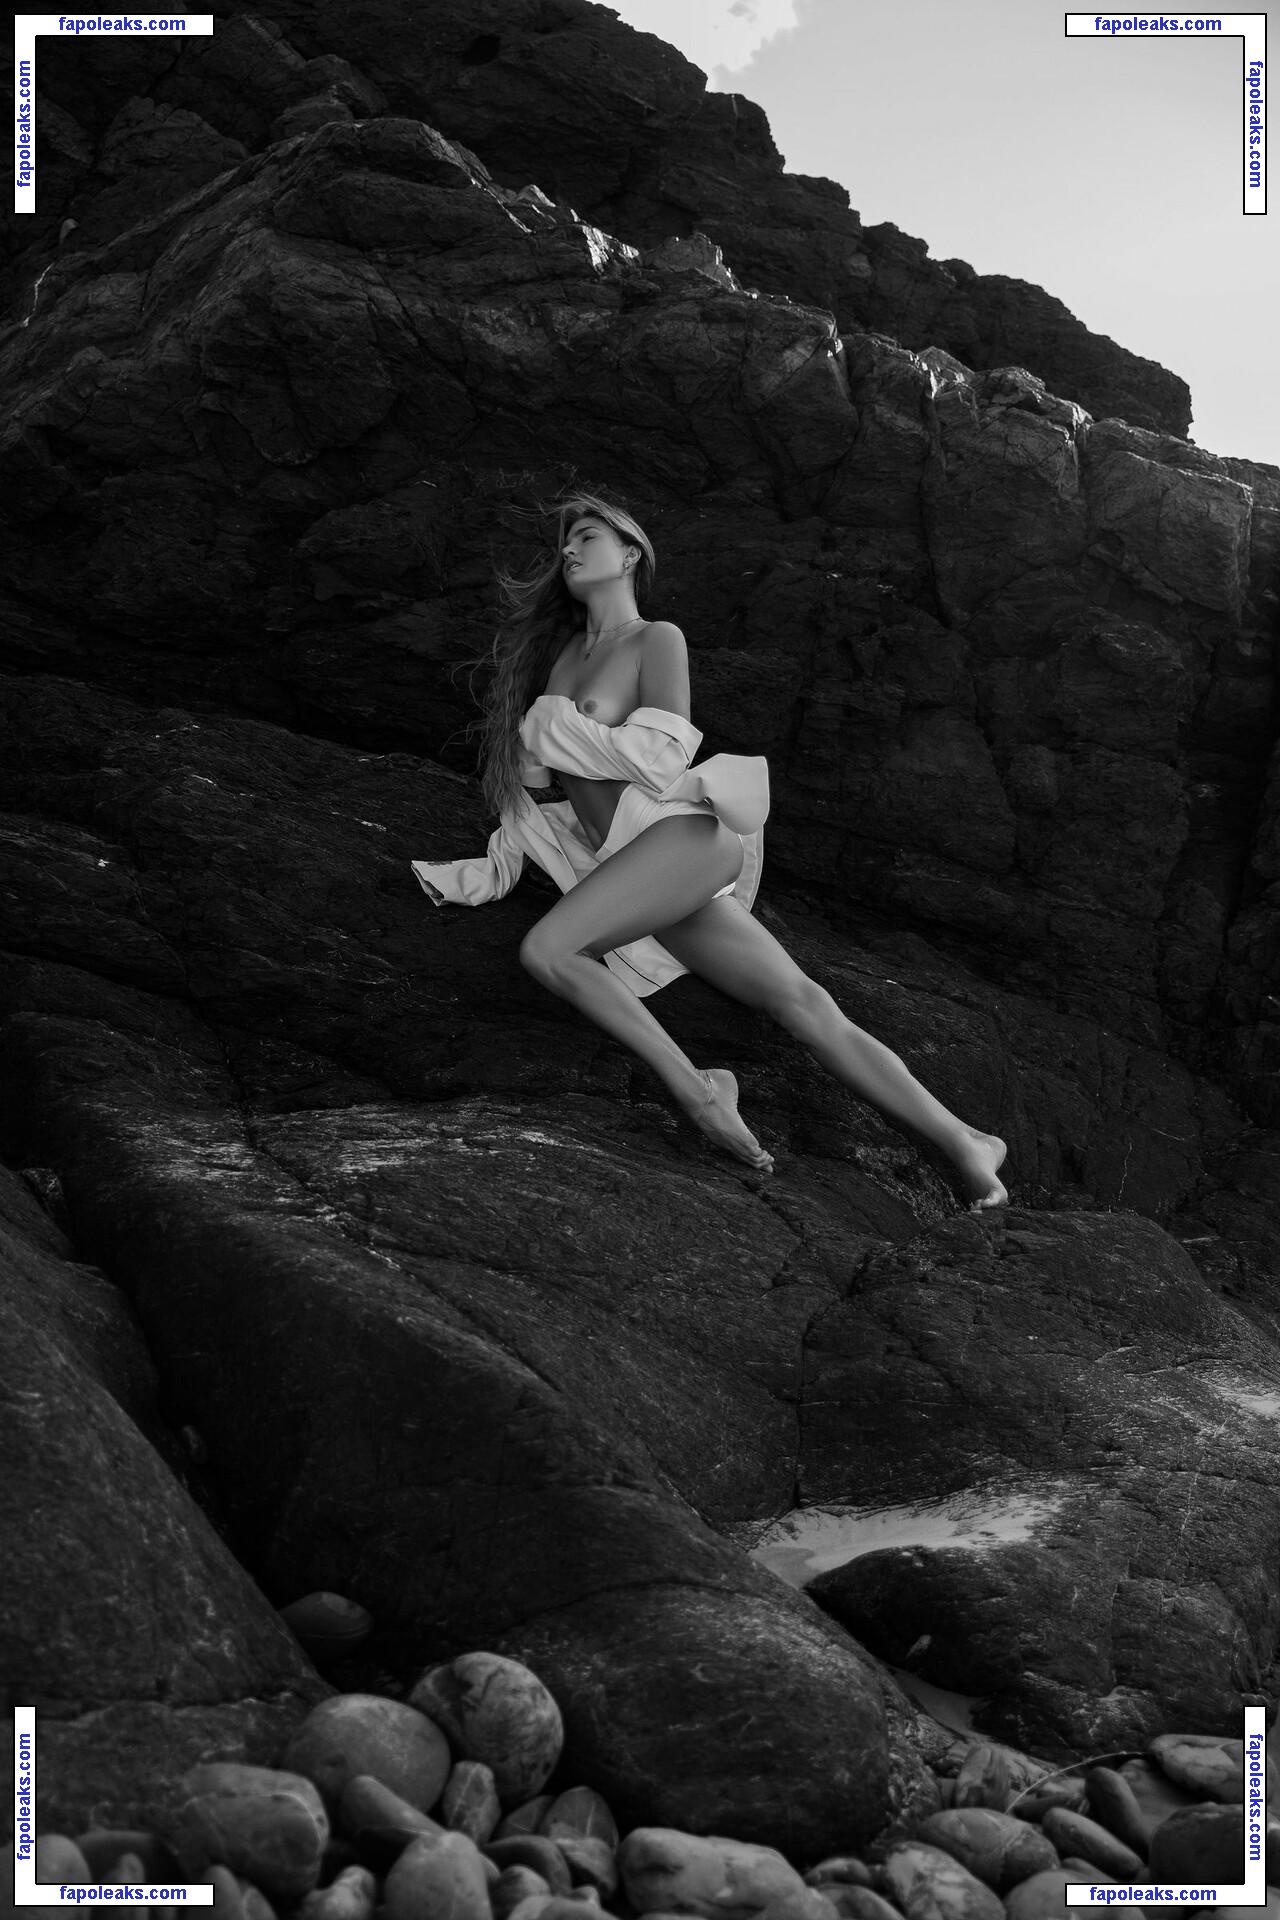 Sjana Elise Earp / sjanaelise nude photo #0006 from OnlyFans